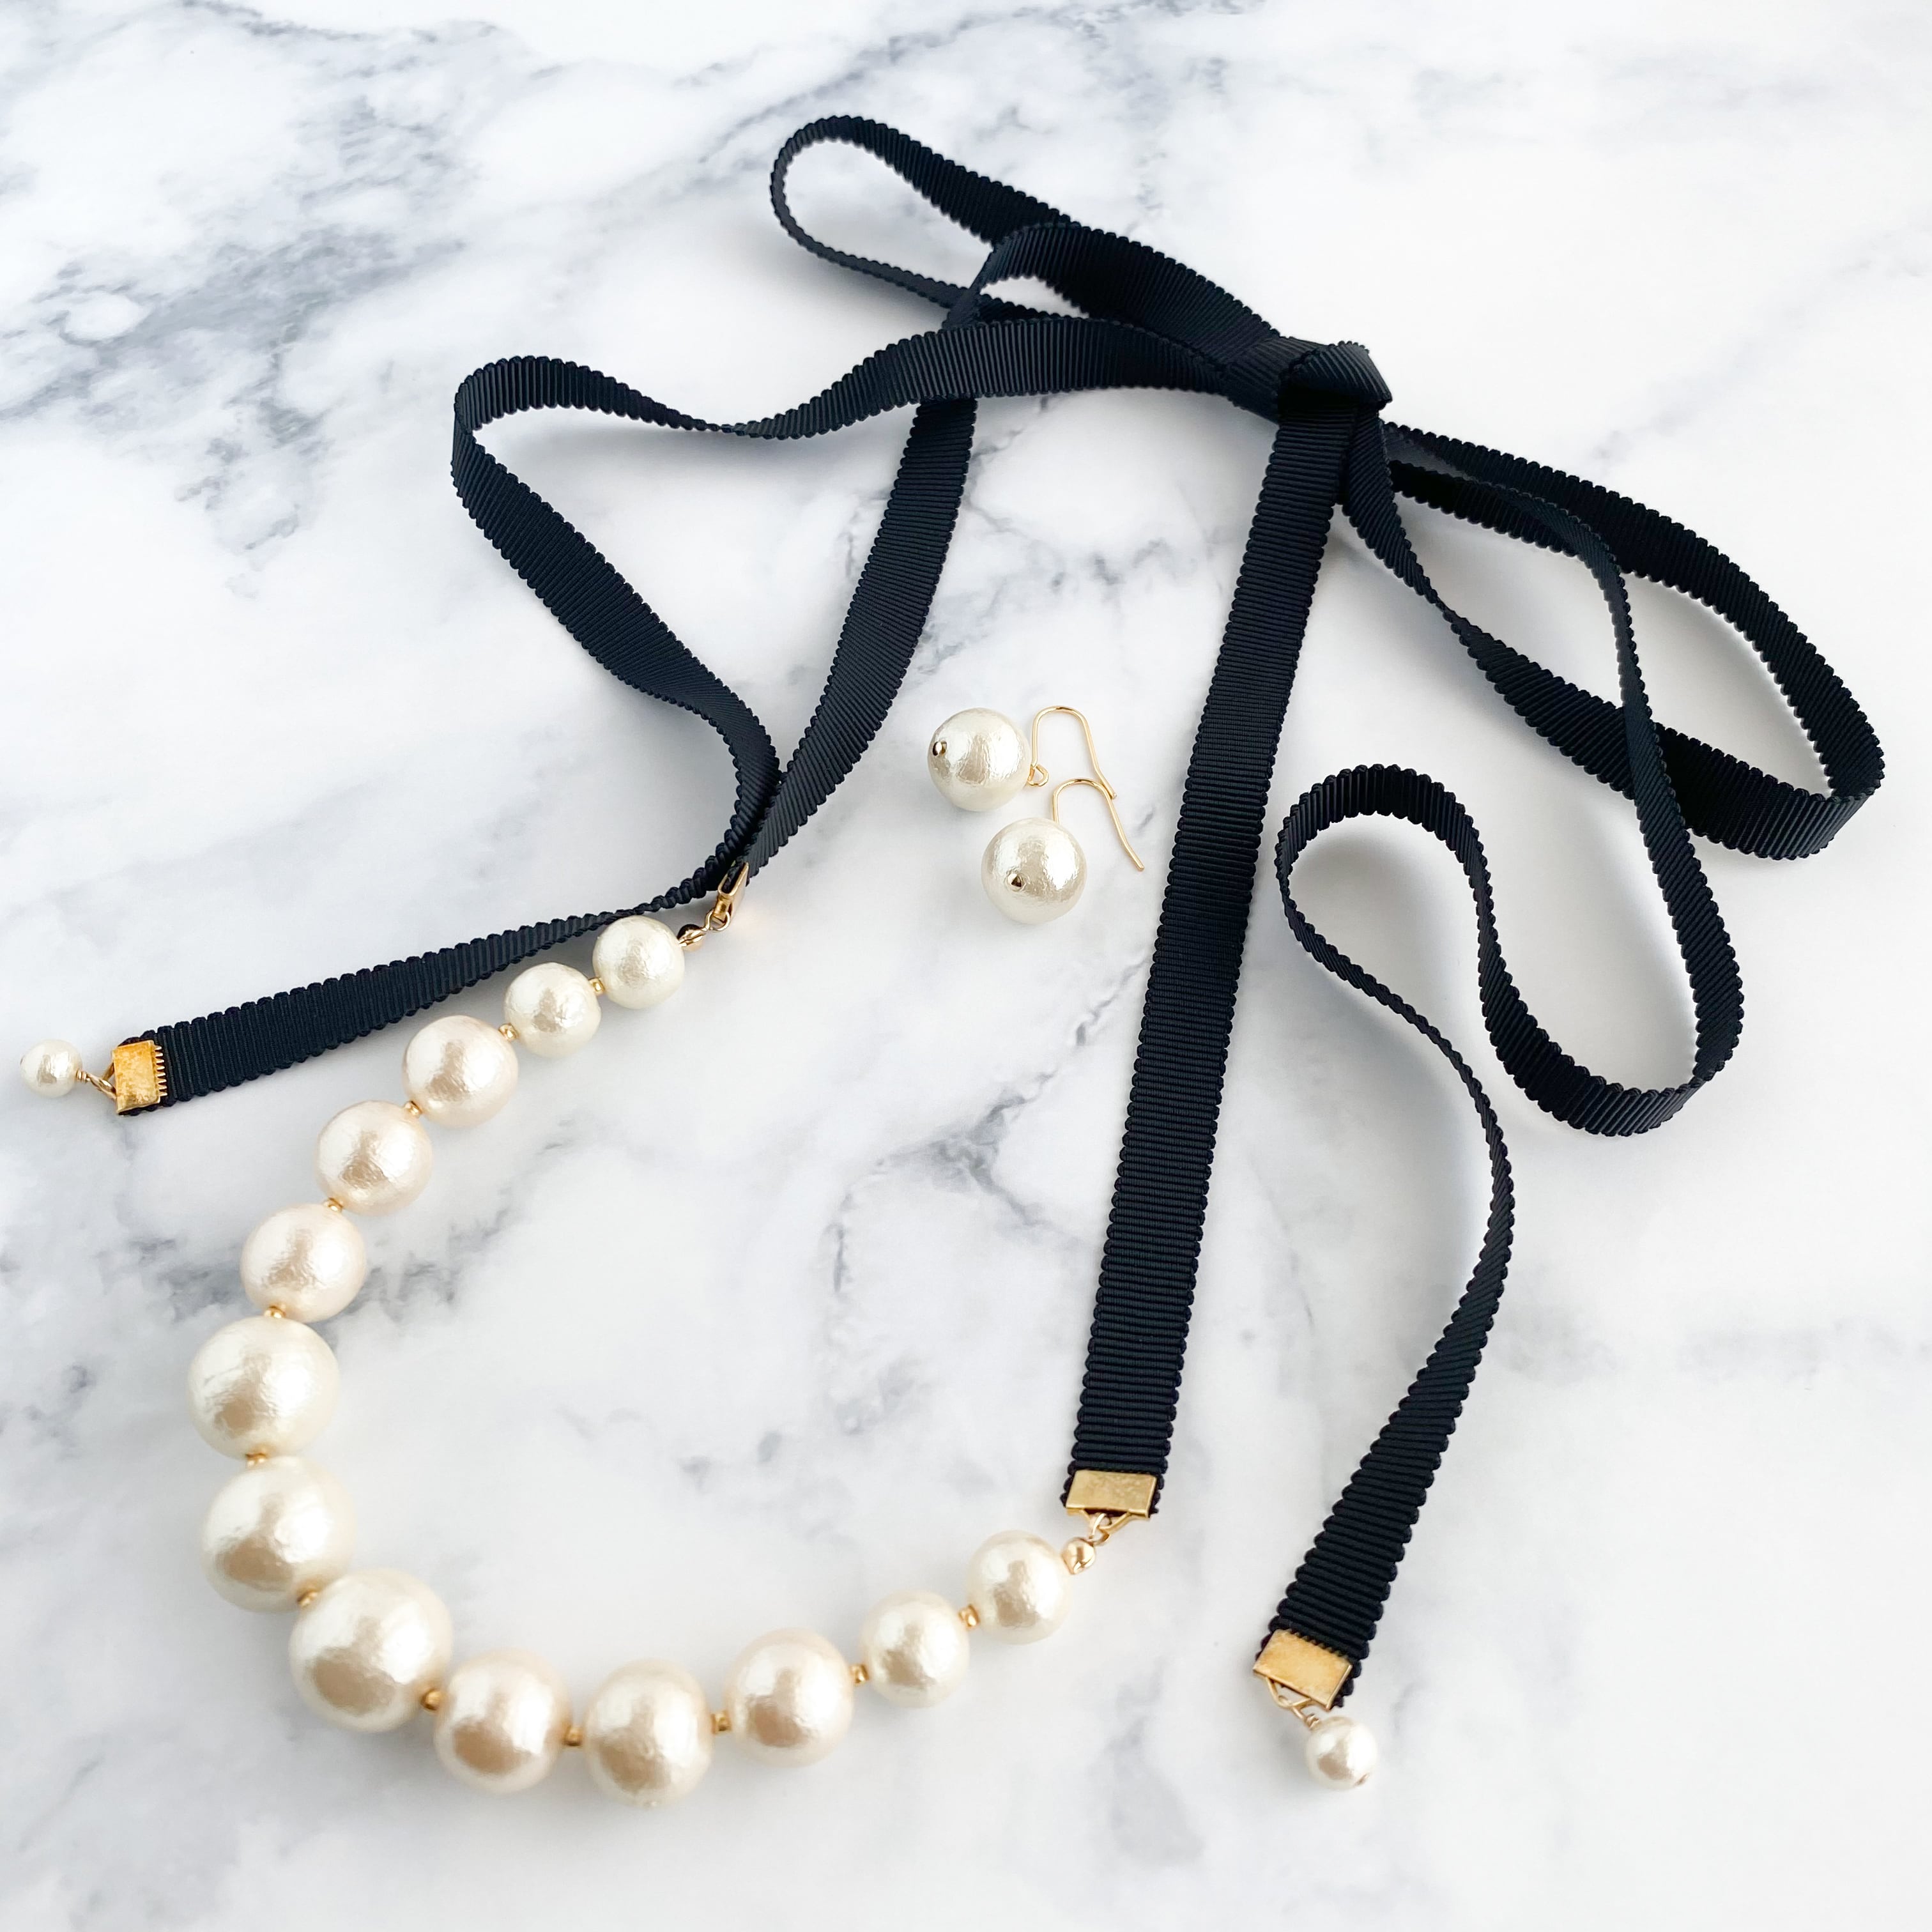 模造真珠ネックレス 留め具ステンレス ワイヤー加工 - 通販